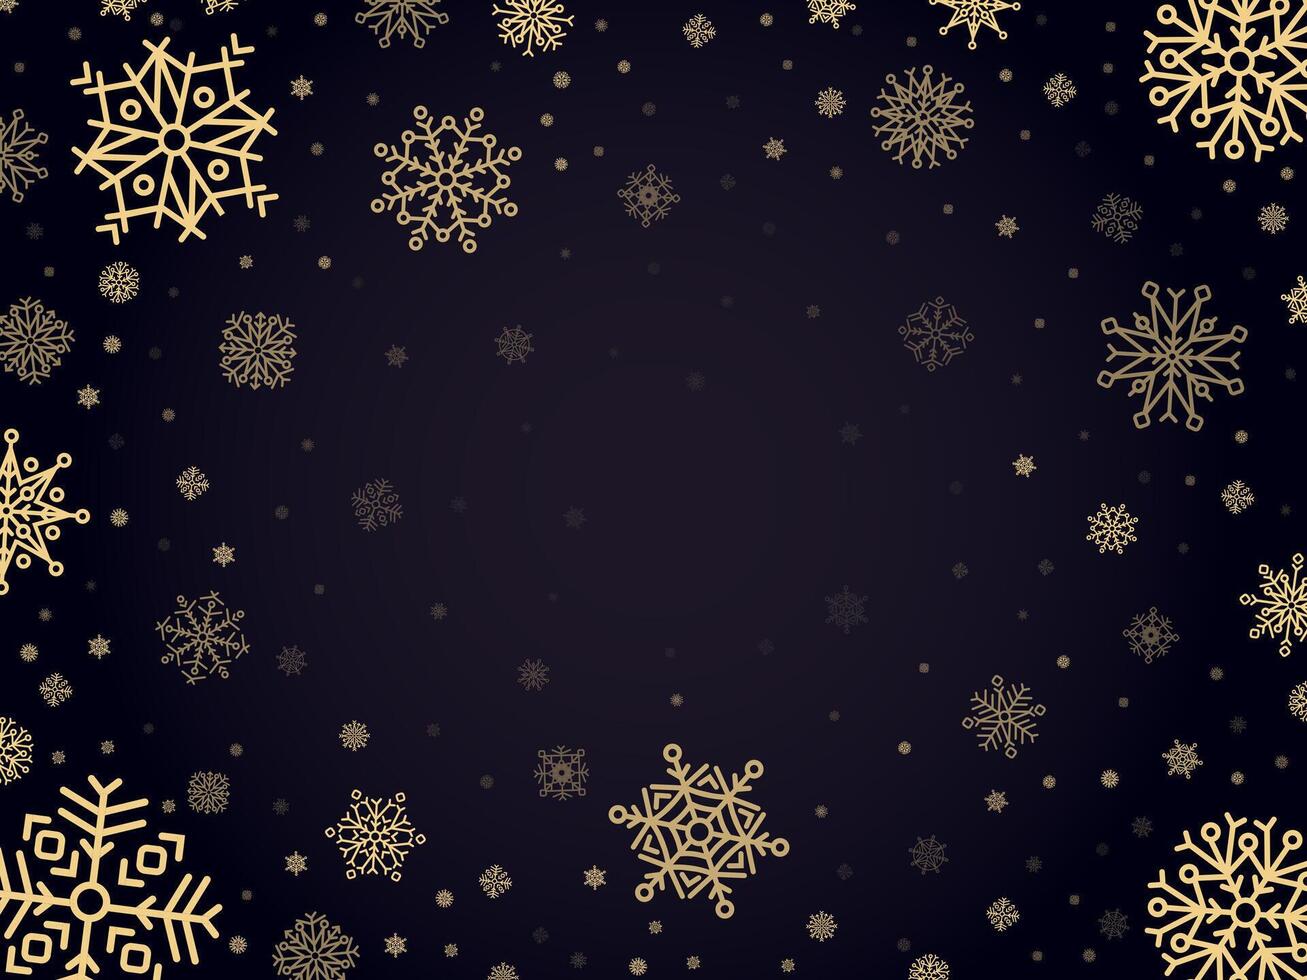 sneeuw vorst achtergrond. sneeuwvlokken winter kader, Kerstmis vakantie sneeuwde vorst grens, verkoudheid zilver sneeuwvlok vector achtergrond illustratie